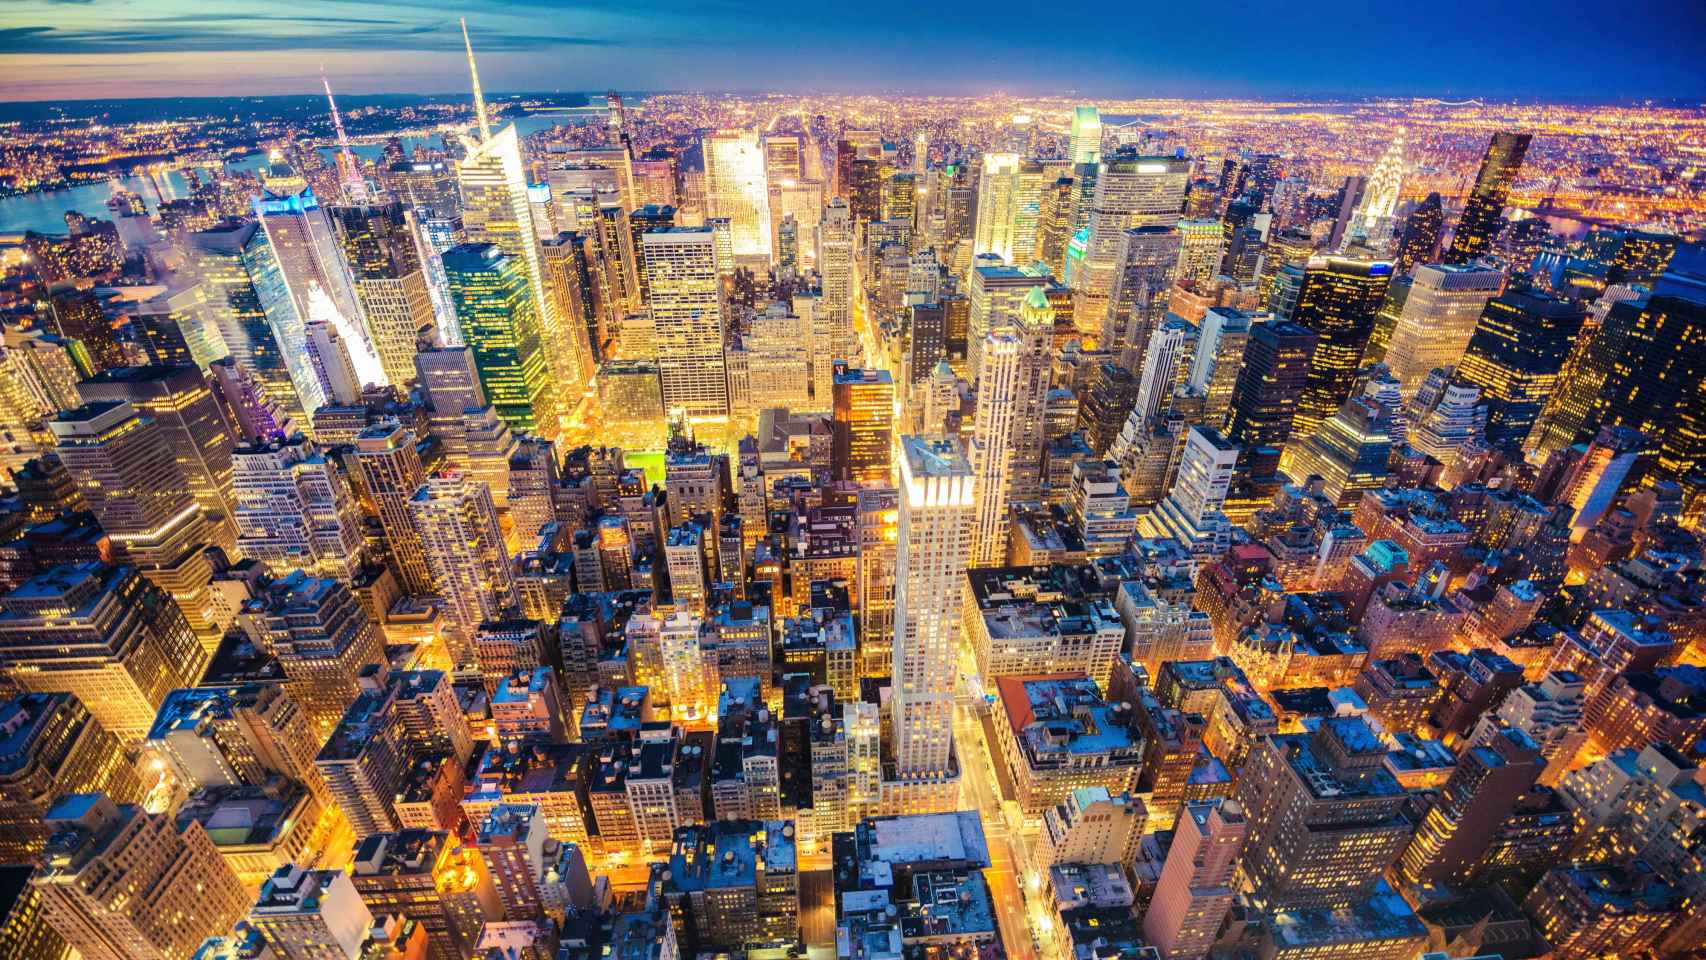 Vista cenital de Manhattan, iluminado por la noche.